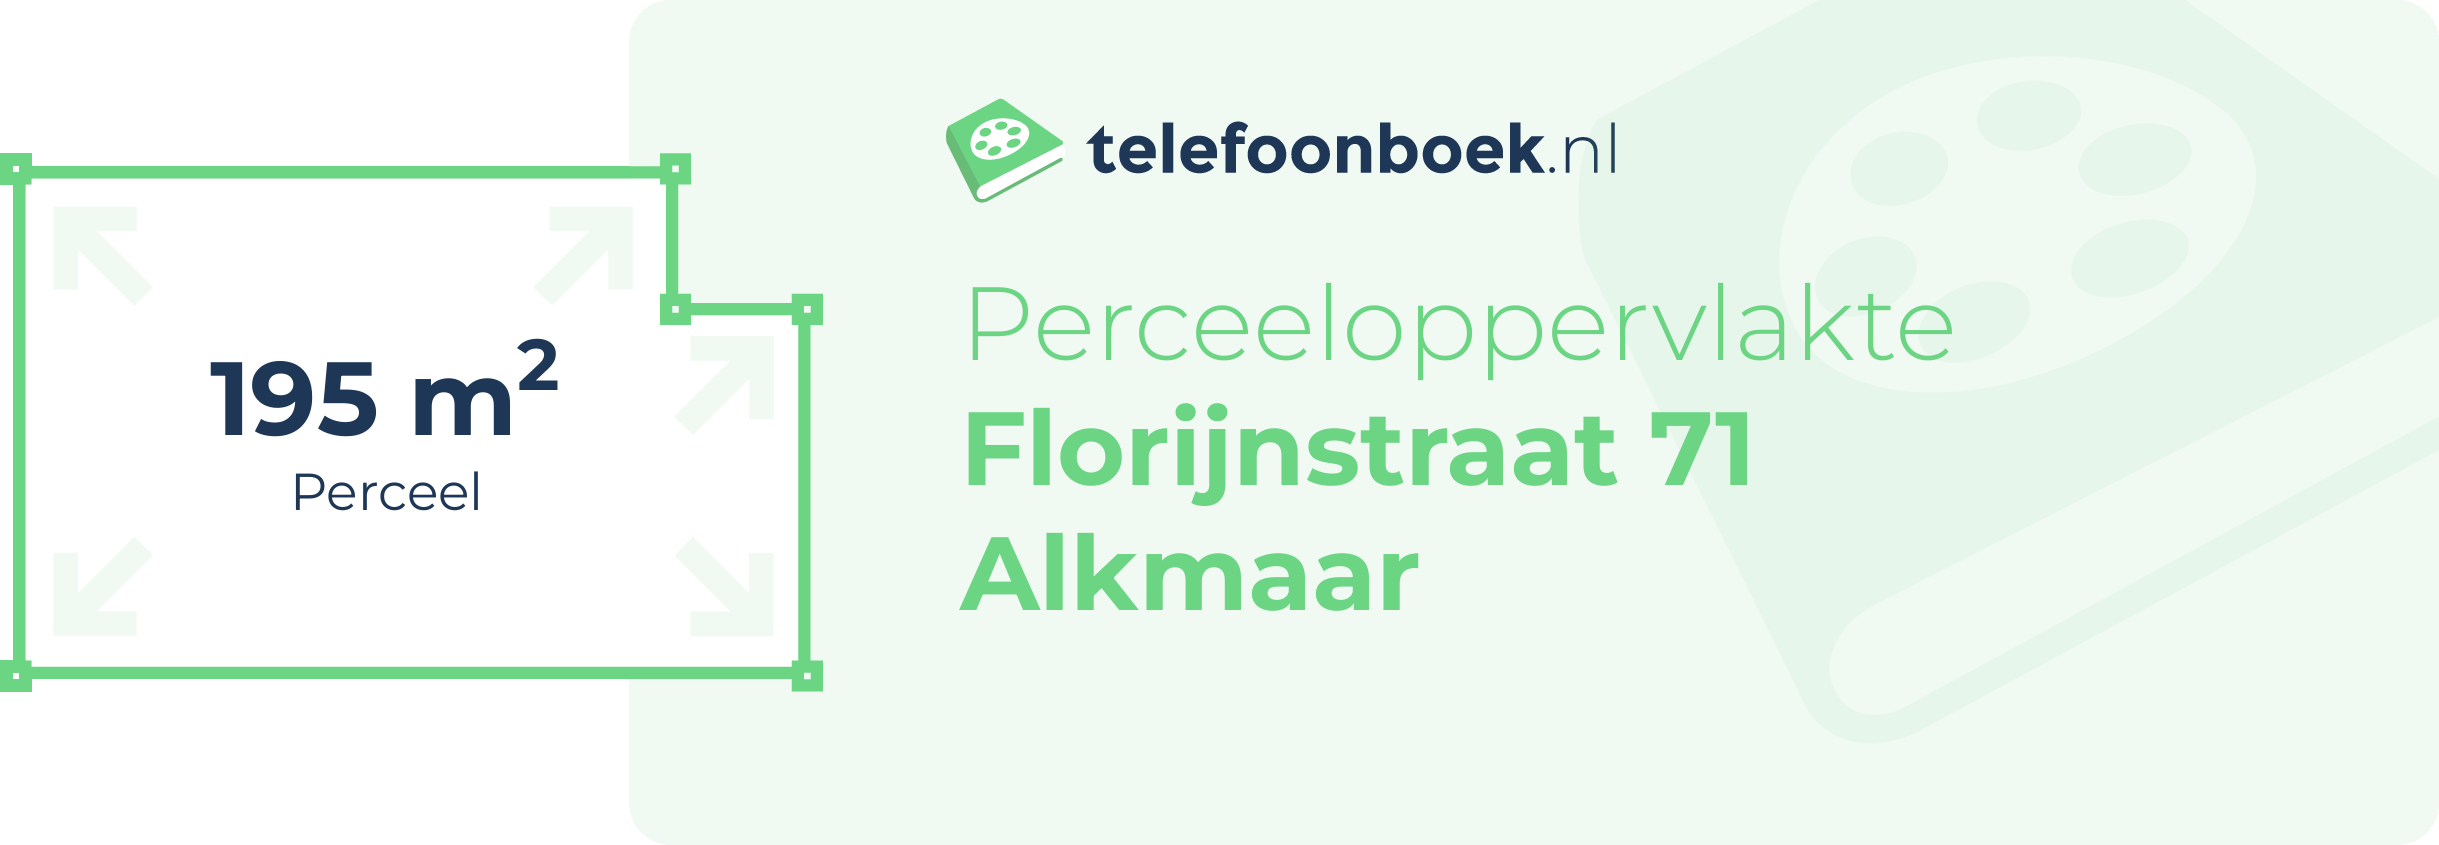 Perceeloppervlakte Florijnstraat 71 Alkmaar